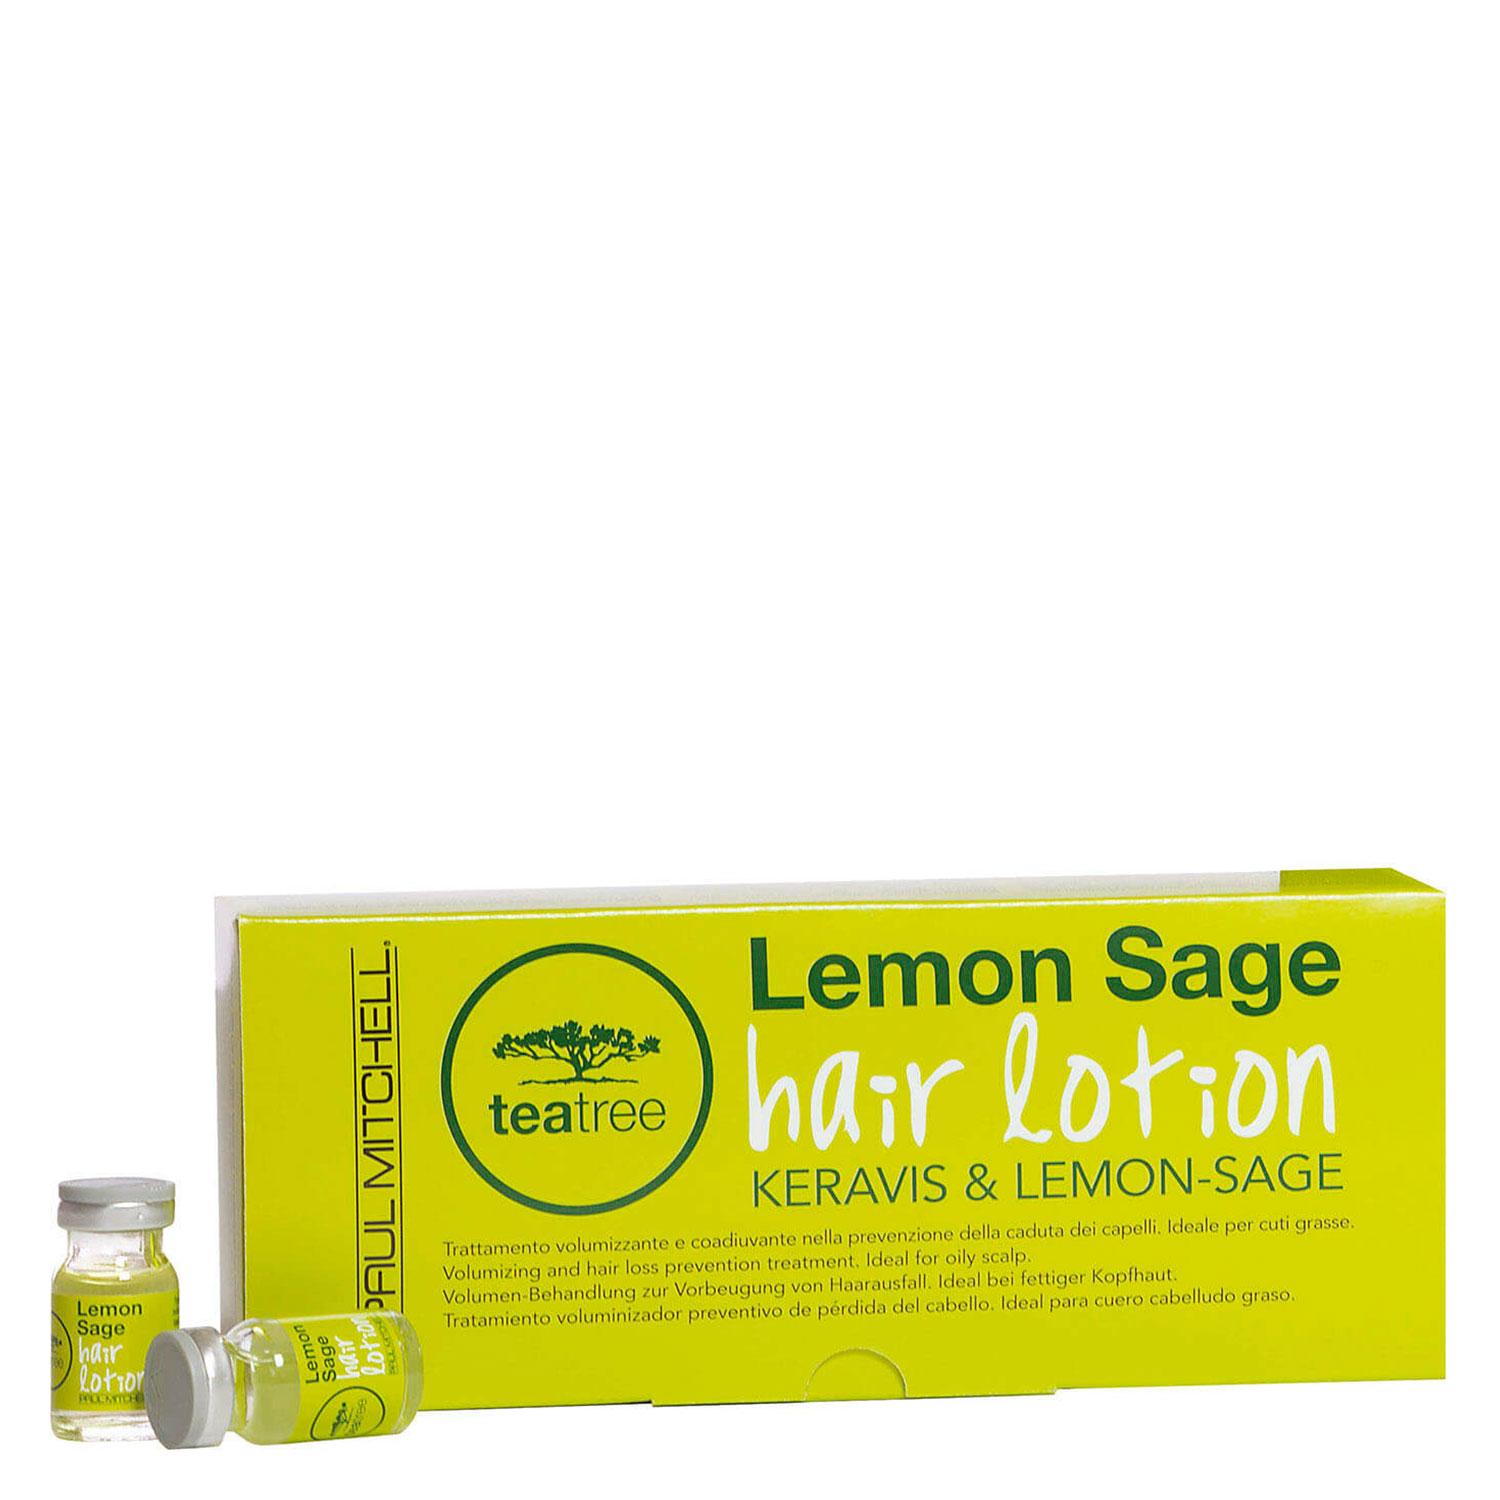 Tea Tree Lemon Sage - Hair Lotion